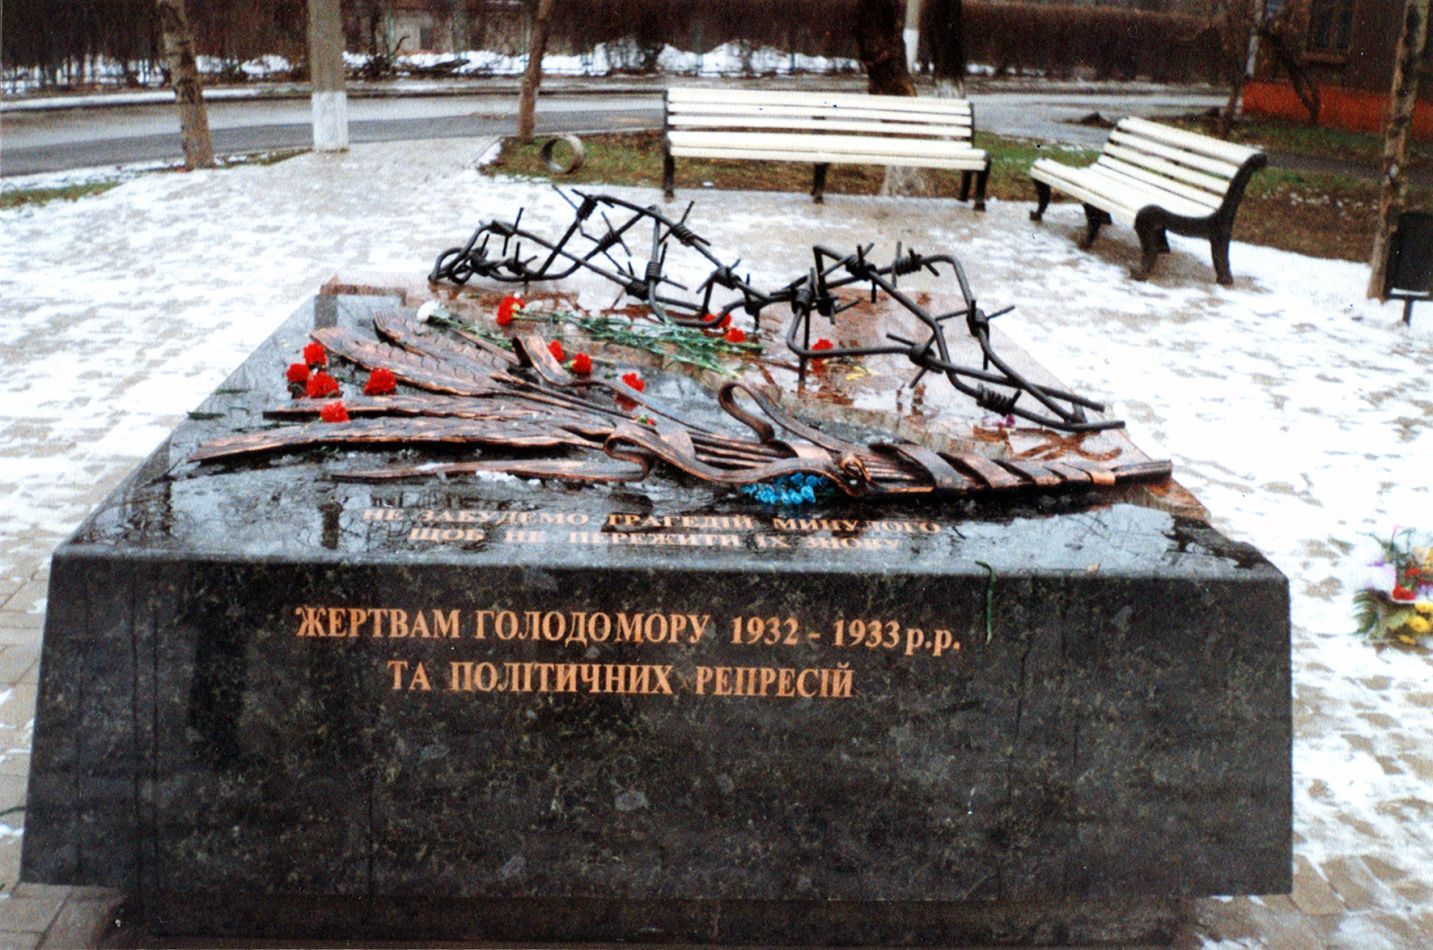 Таким був меморіал жертвам голодомору, встановлений у 2004 році в центрі Маріуполя, до демонтажу російськими варварами, які й влаштували майже сотню років тому в Україні геноцид нашому народу.